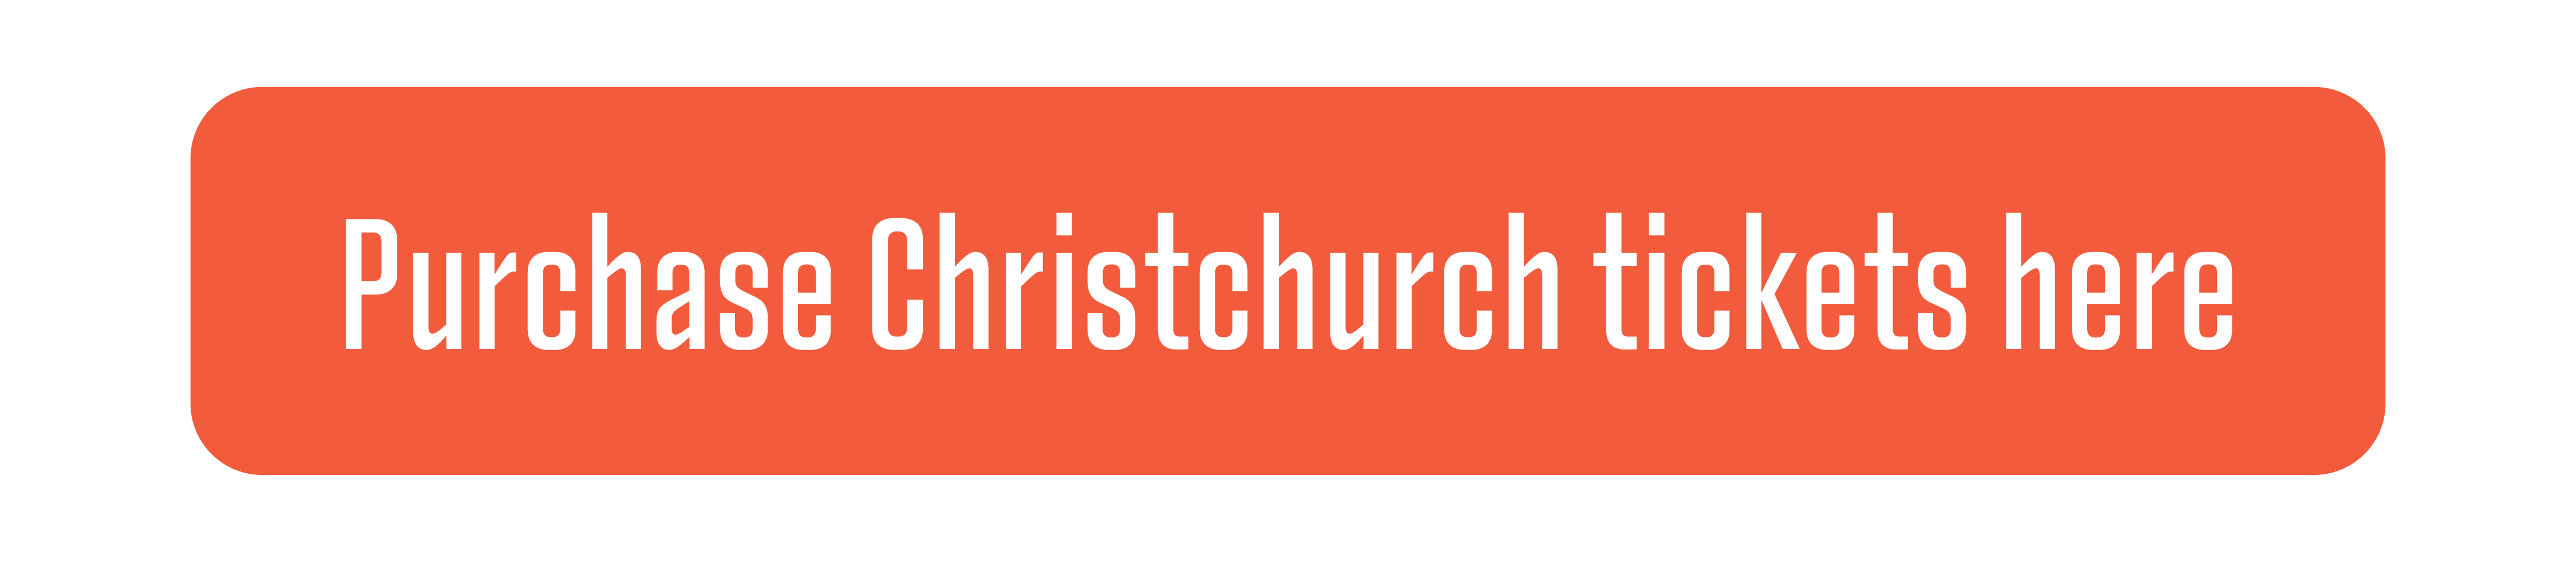 Christchurch ticket button.png